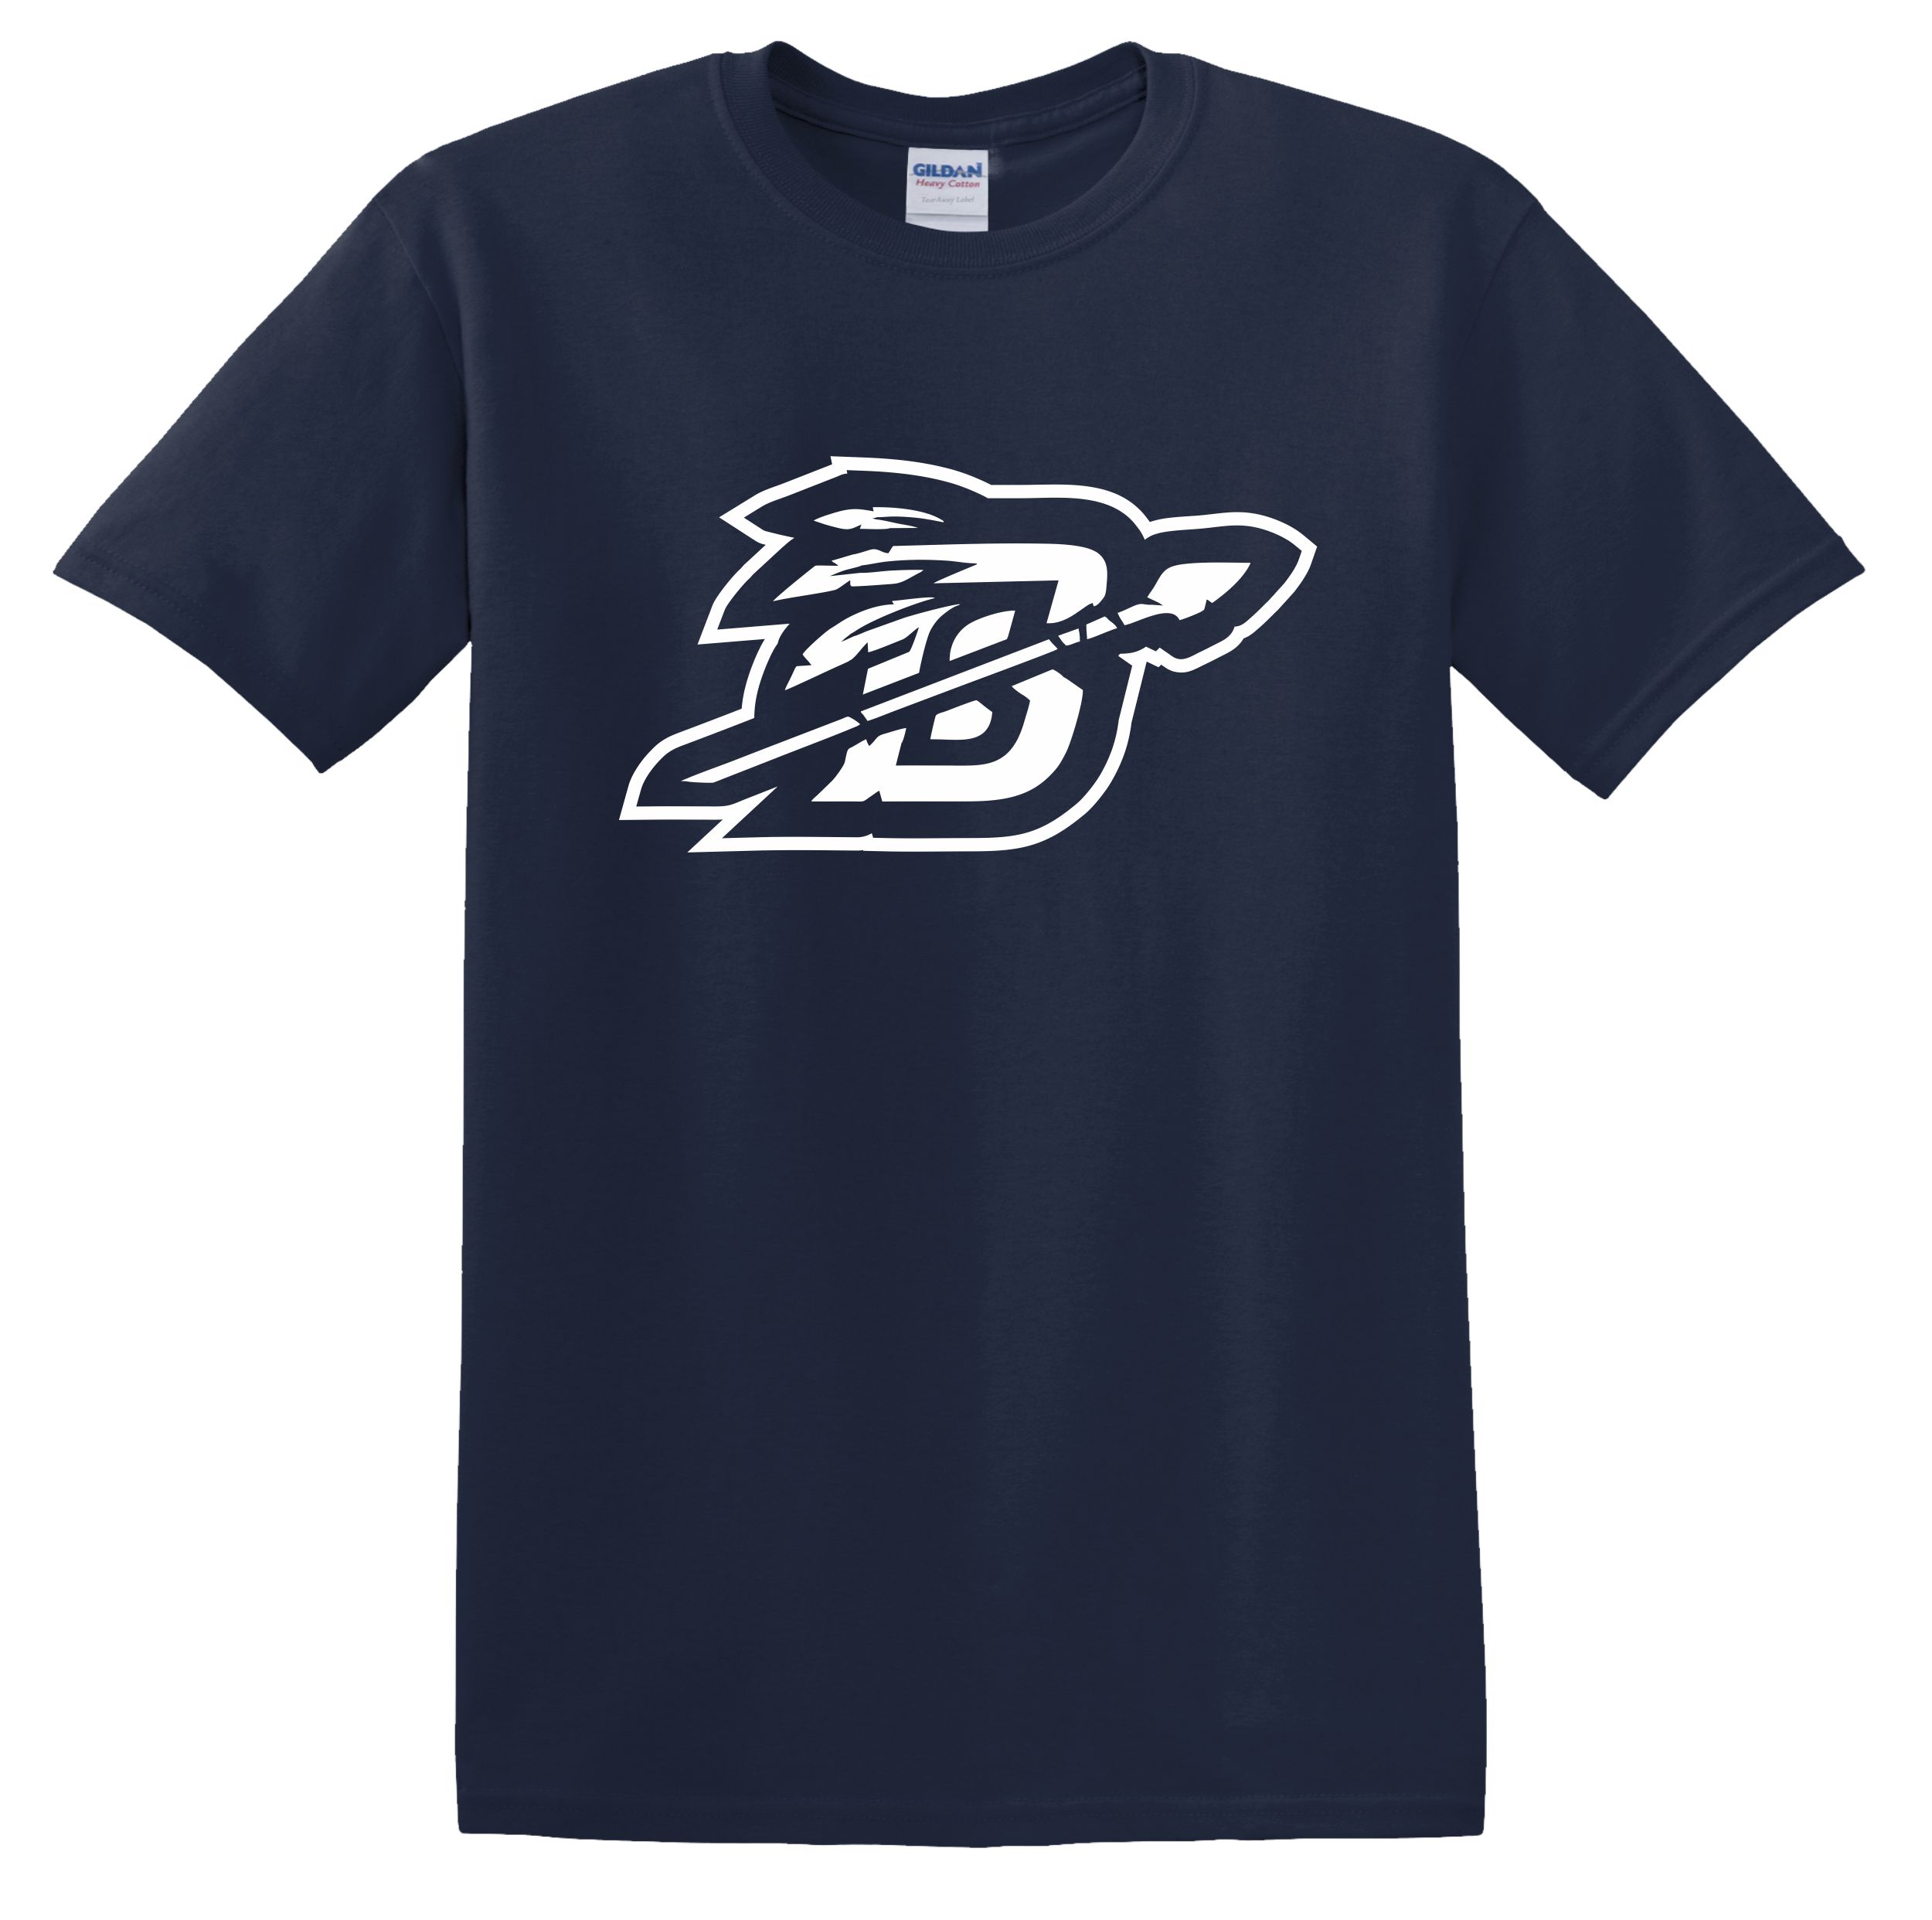 Brookville Cheer T-Shirt 